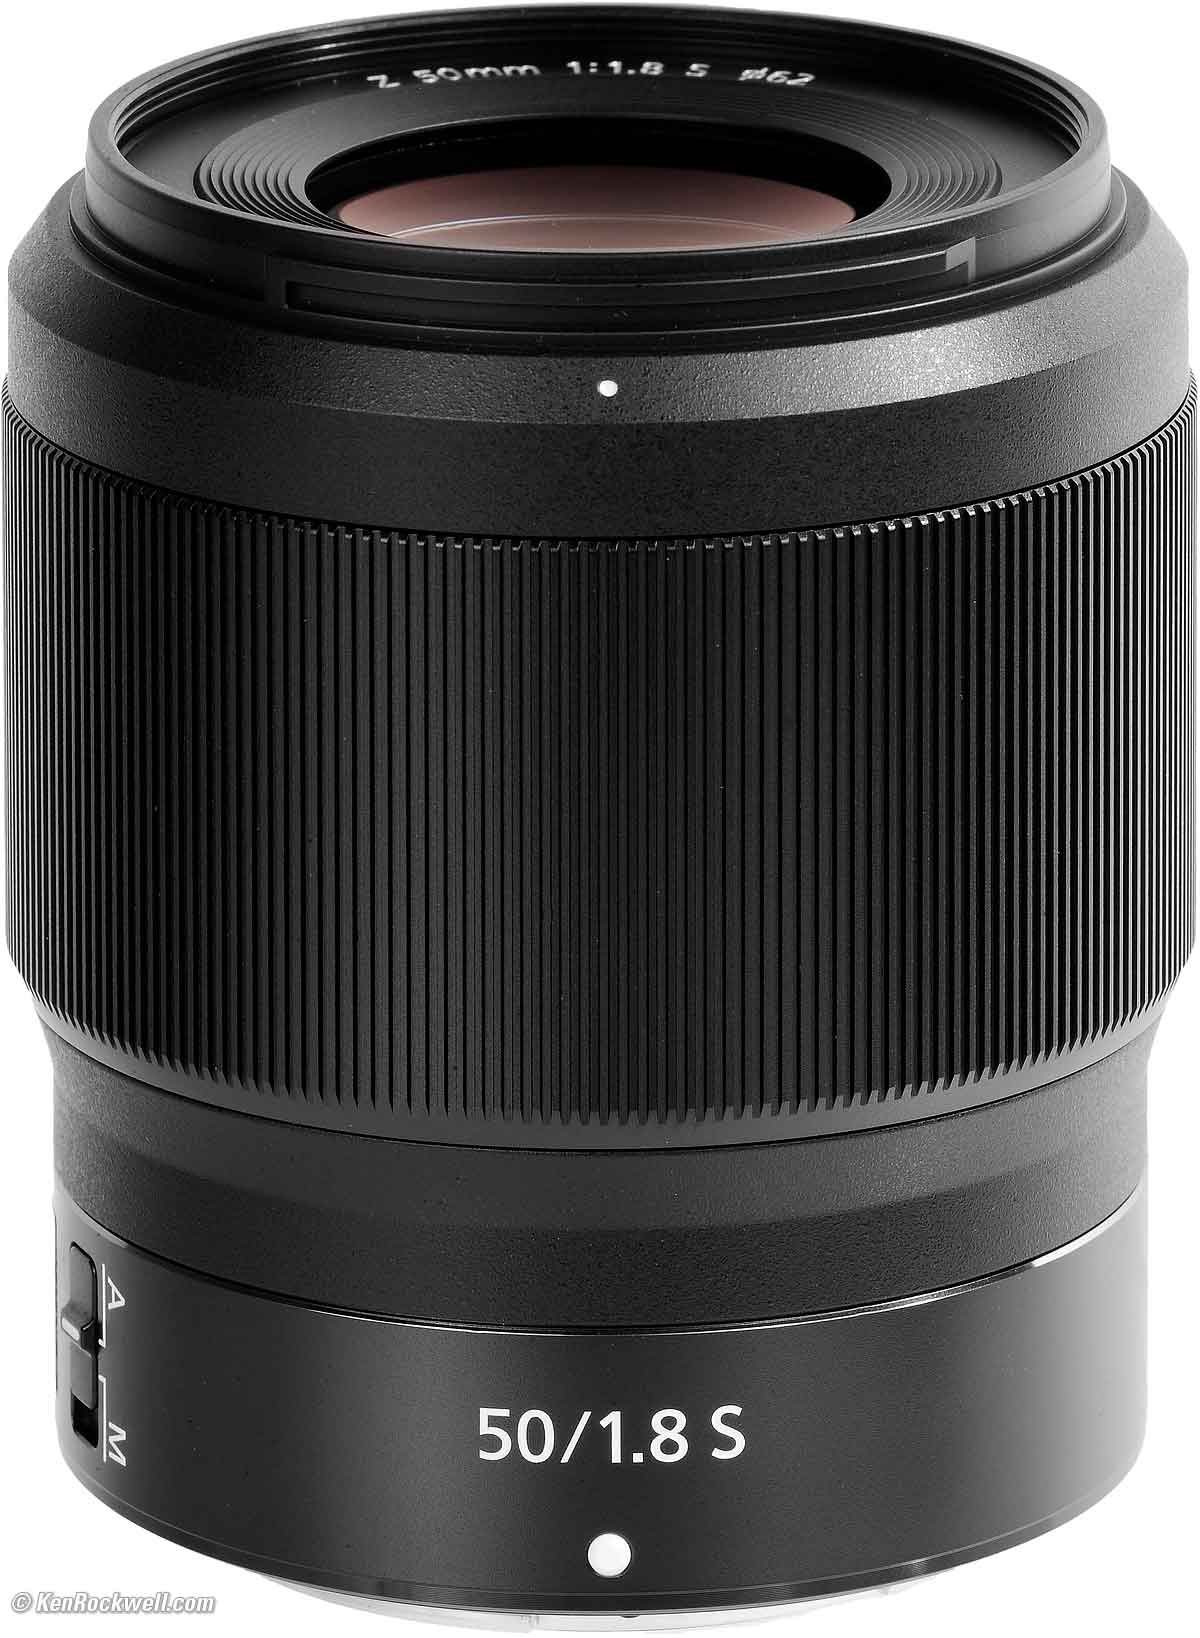 Nikon Z 50mm f/1.8 Review